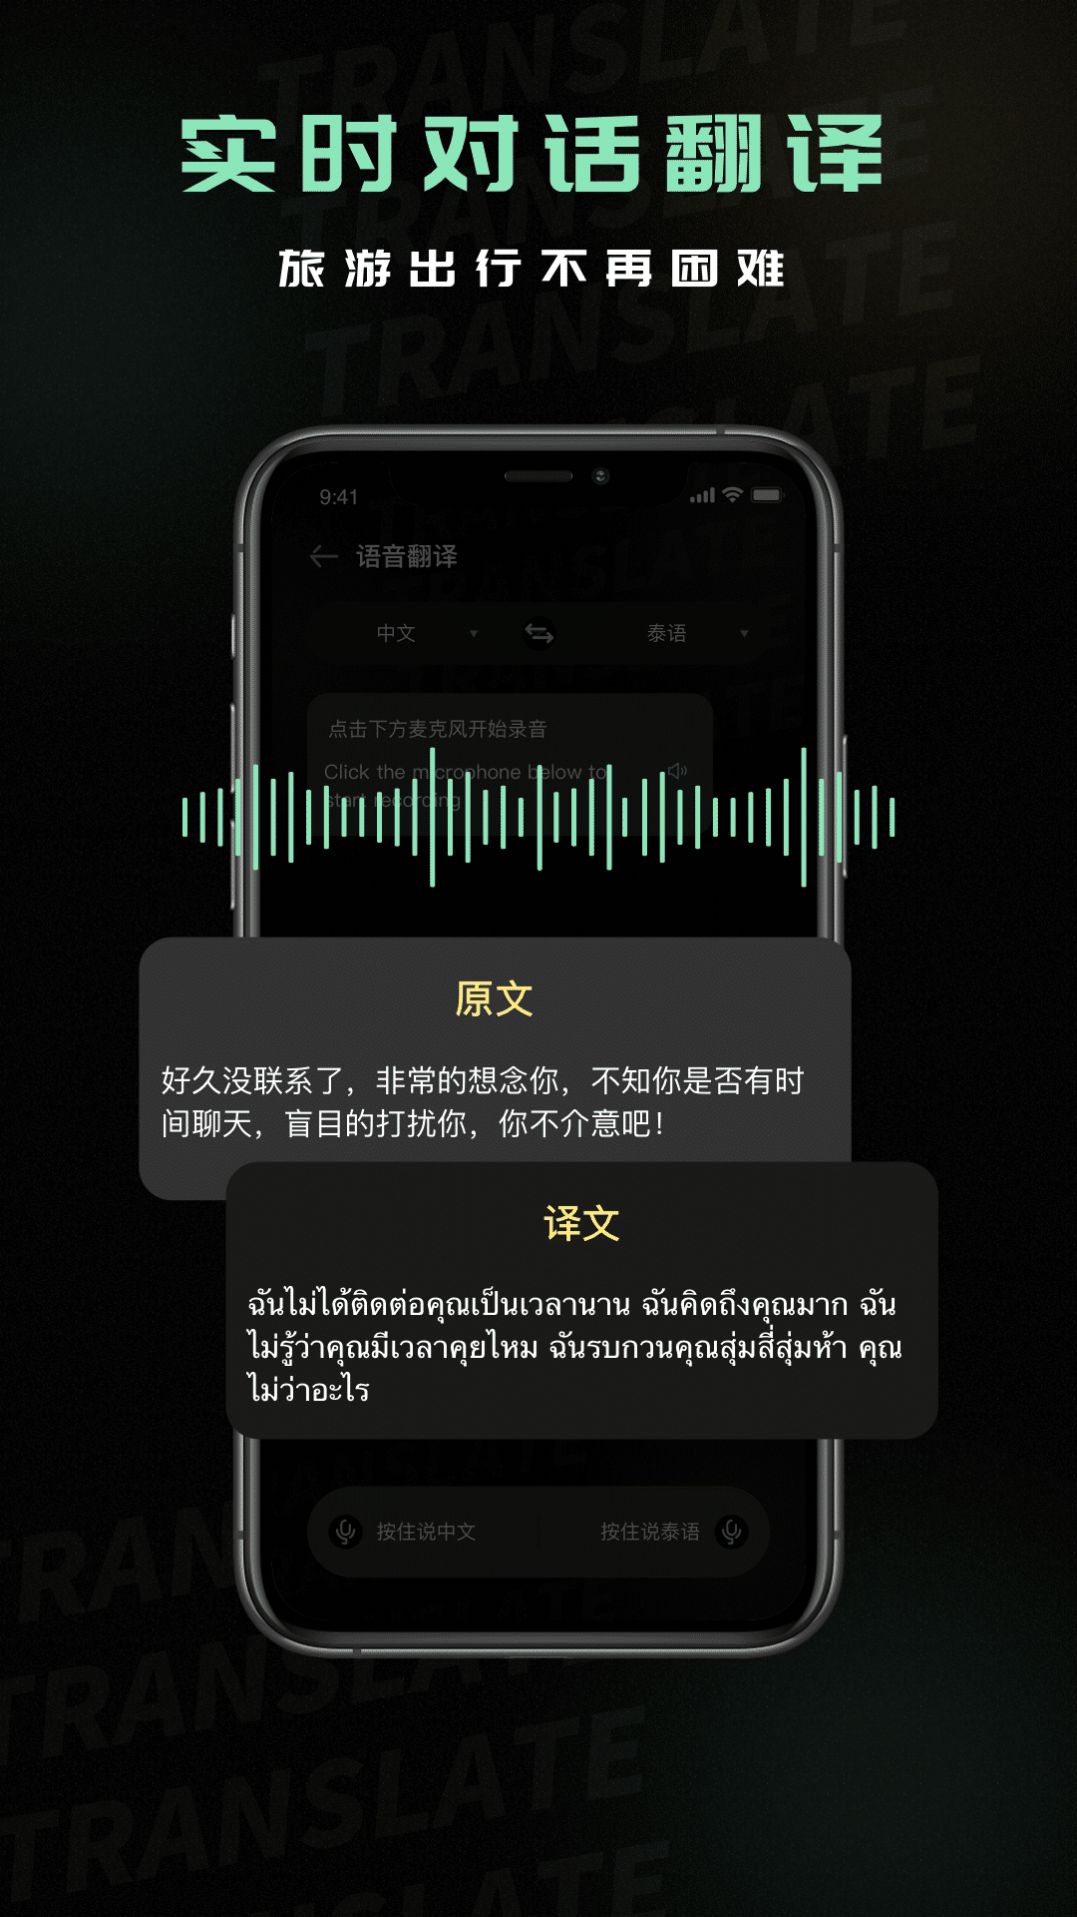 泰语翻译器拍照识别软件